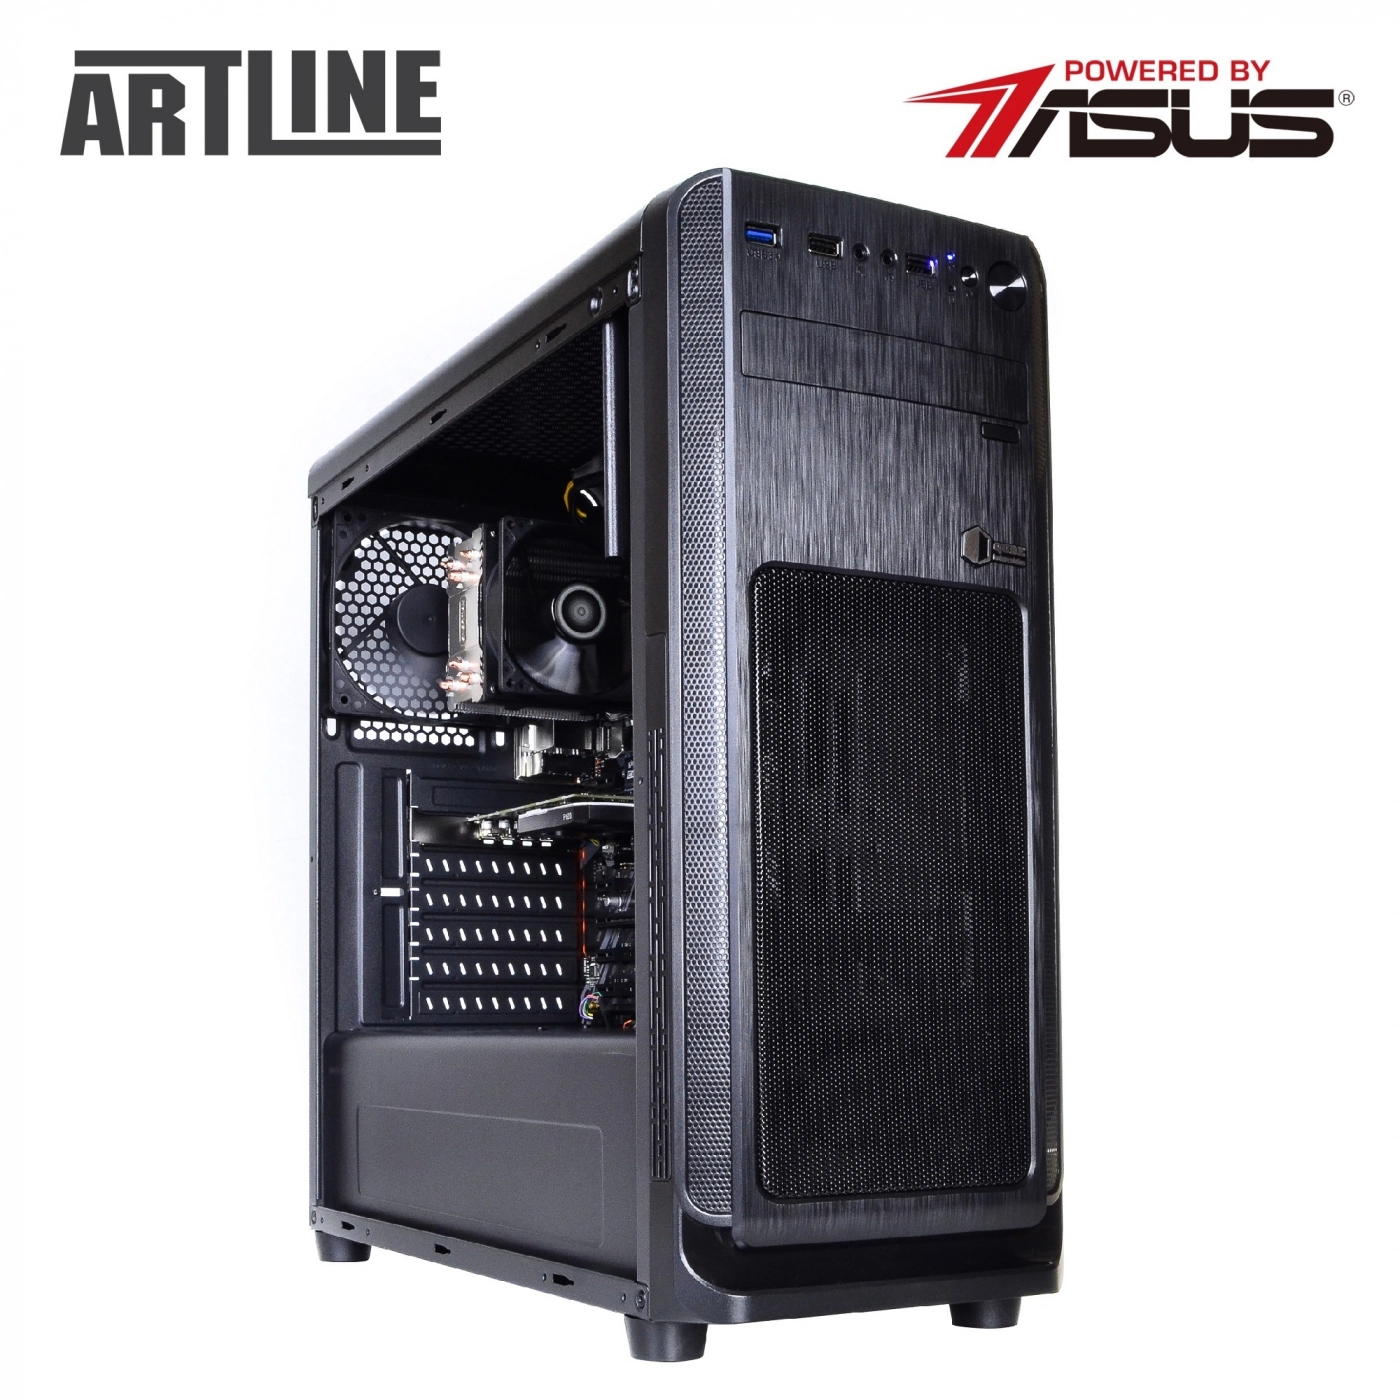 Купить Сервер ARTLINE Business T25v37 - фото 8